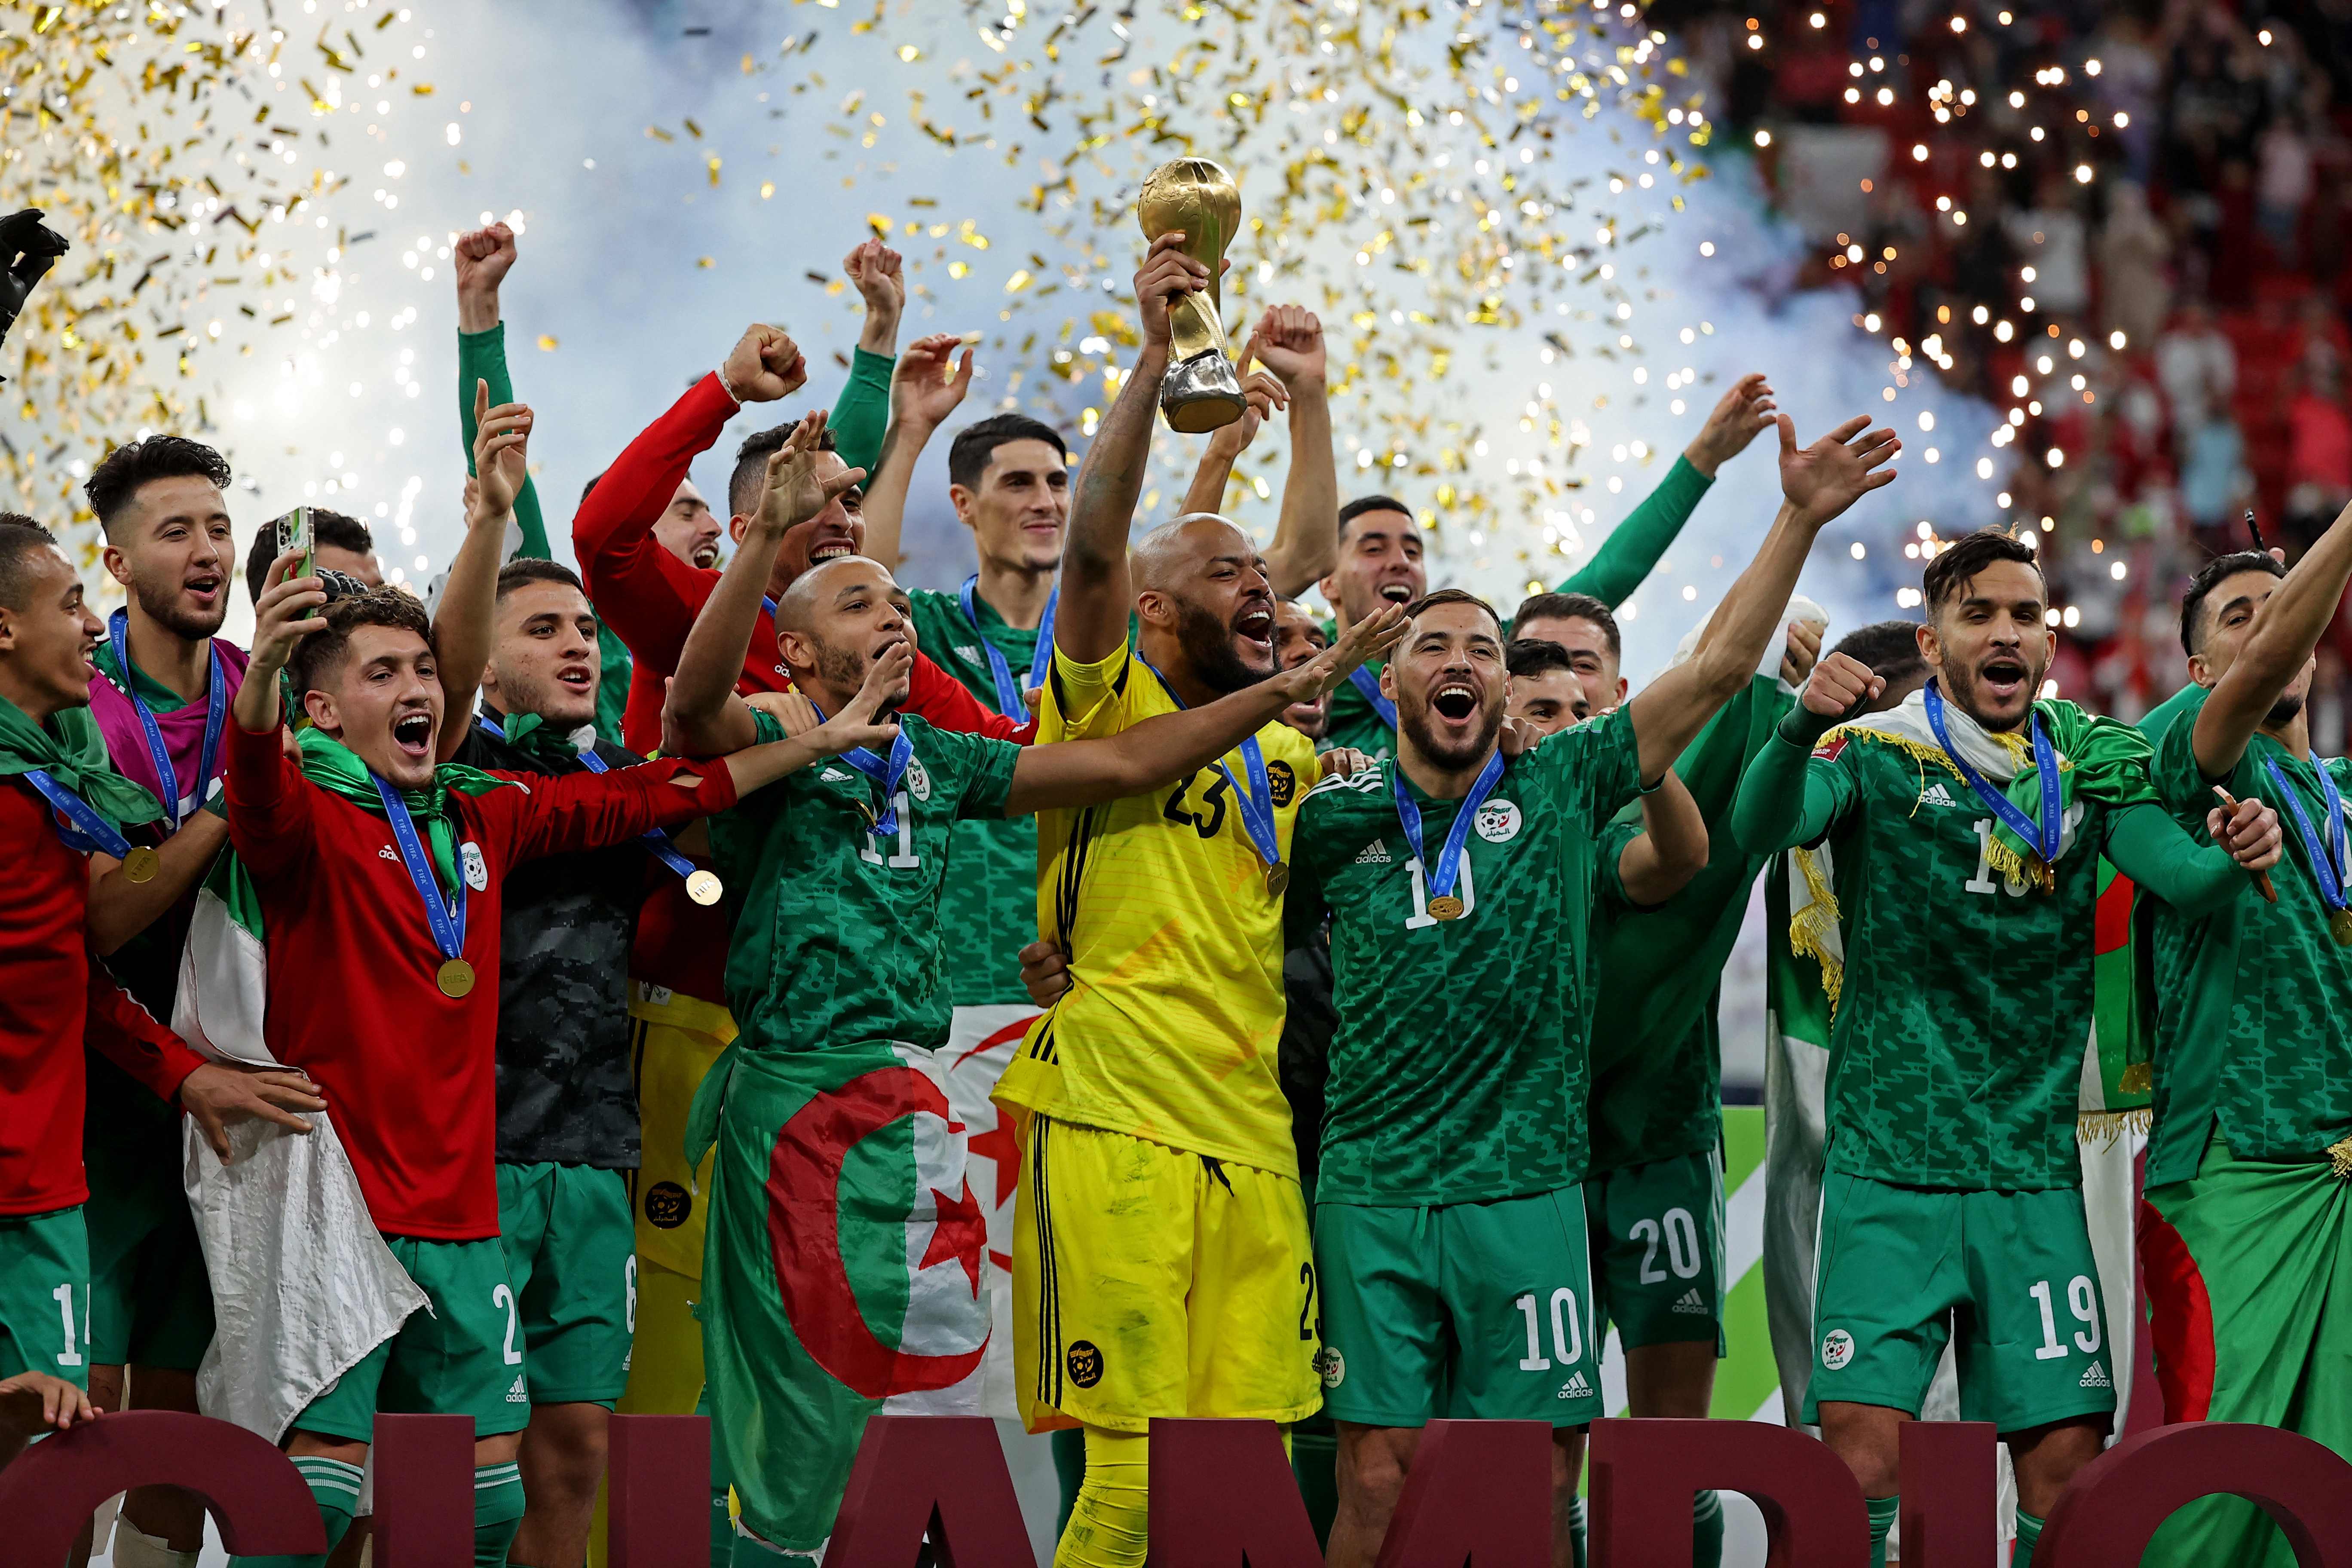 Los jugadores de Algeria festejan tras ganar la final de la FIFA Arab Cup 2021. (Foto Prensa Libre: AFP)